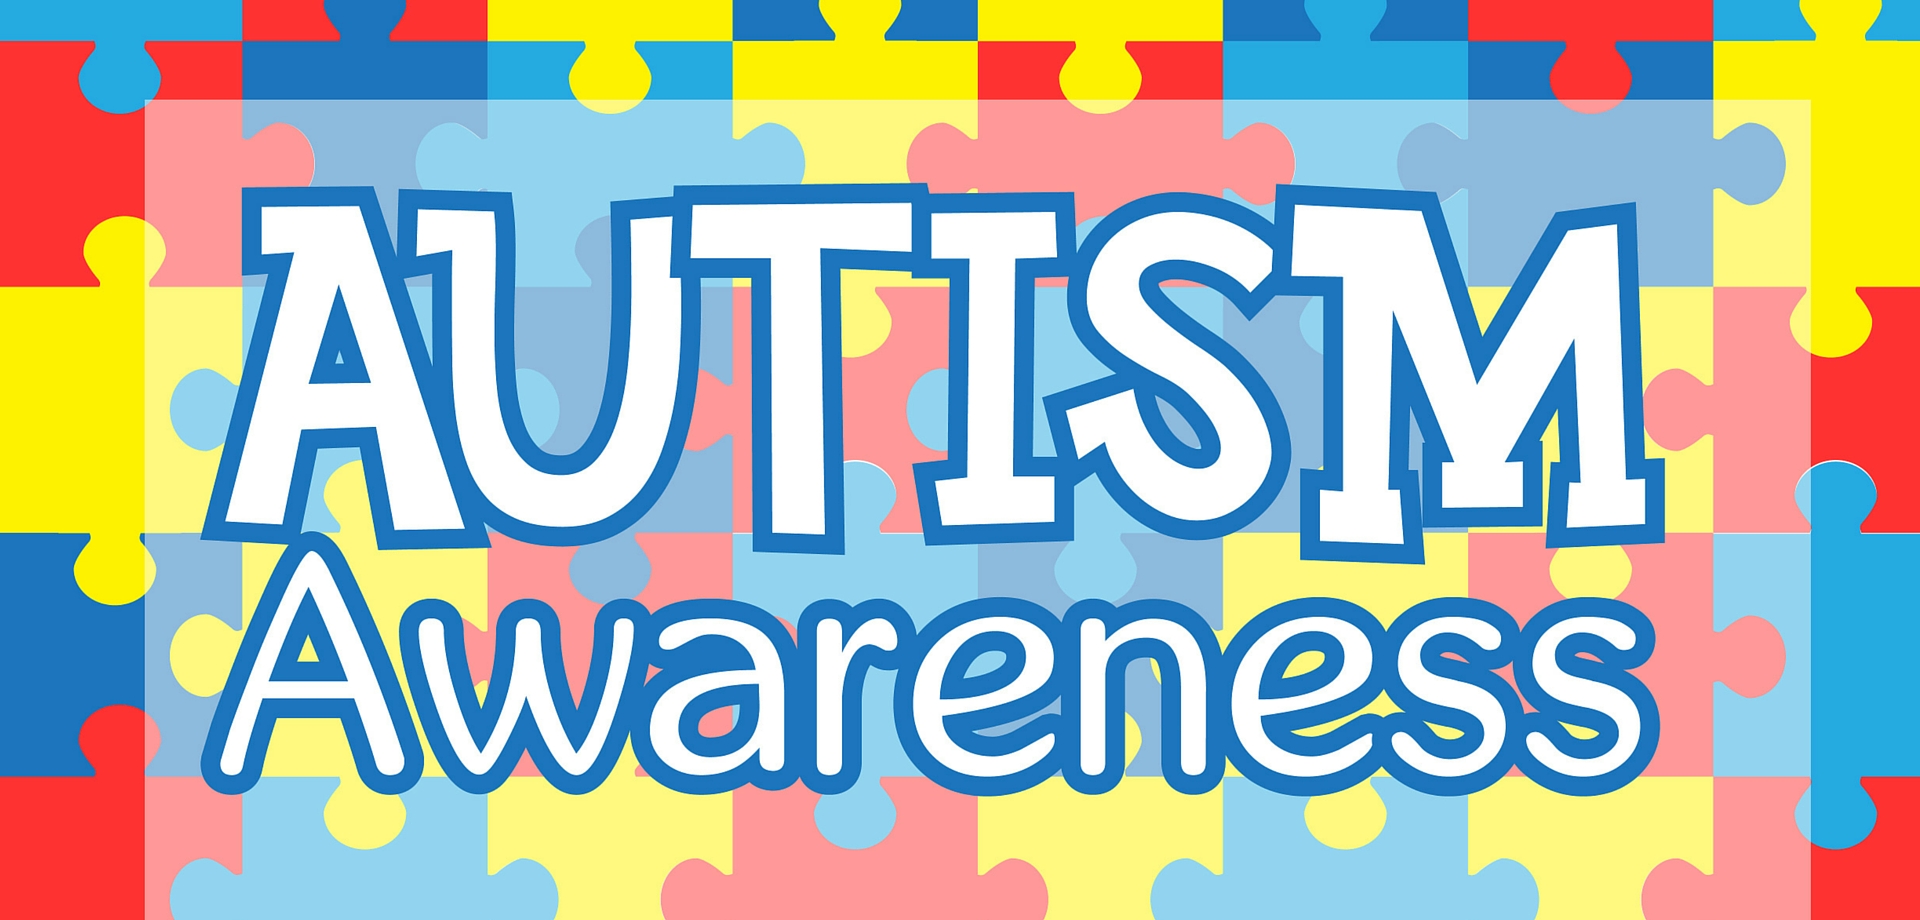 autismawareness-1.jpg